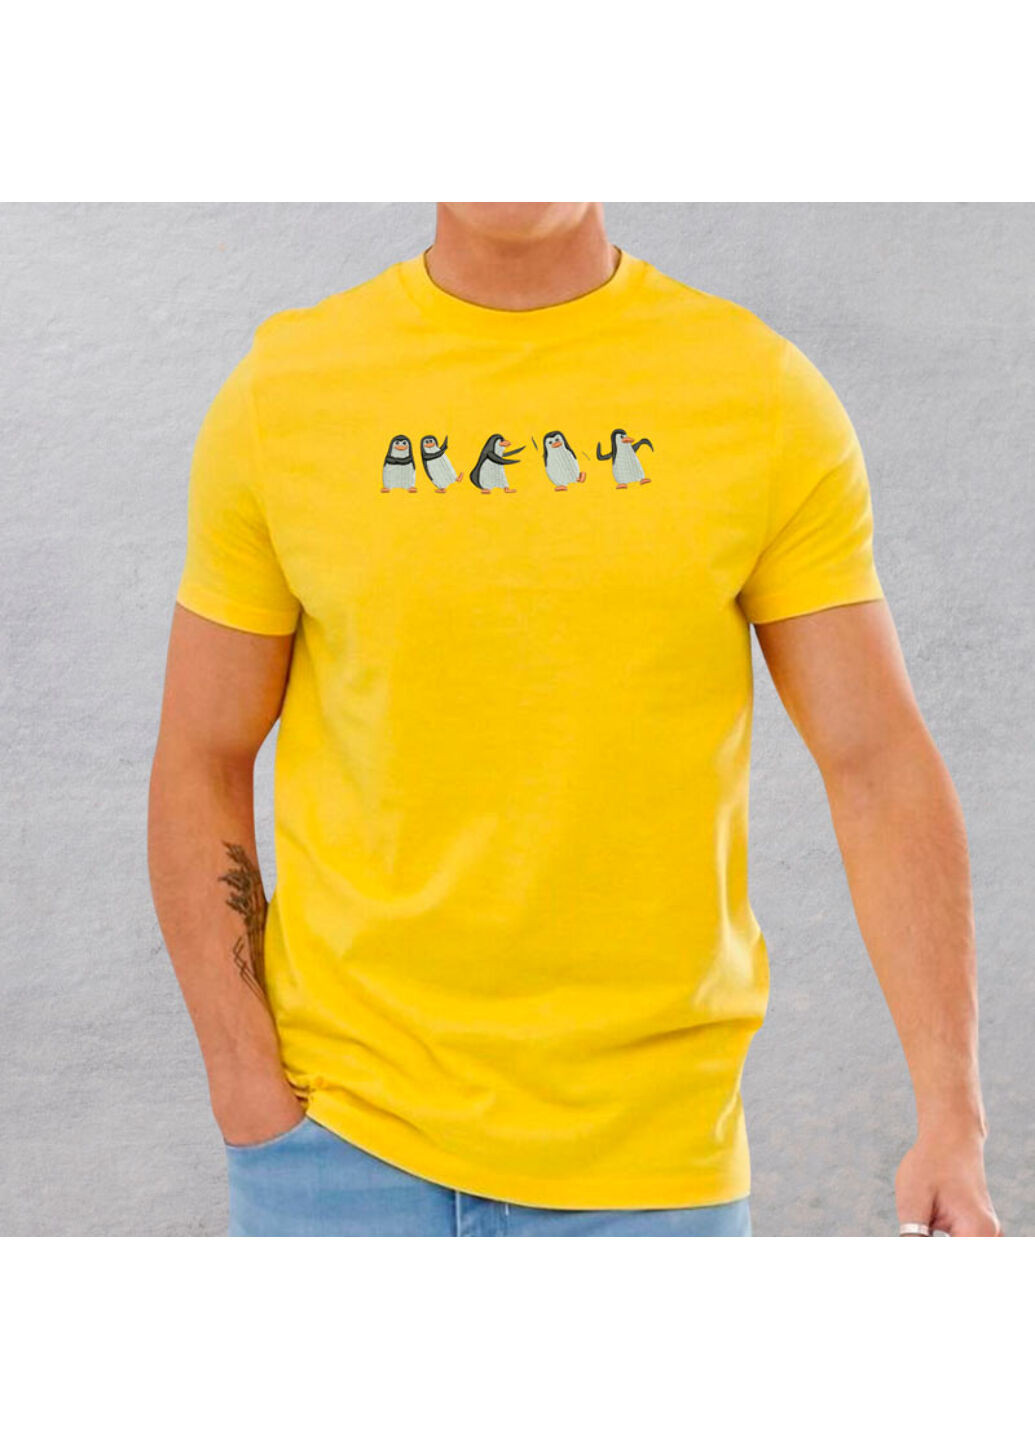 Желтая футболка с вышивкой пингвинов 01-5 мужская желтый xl No Brand